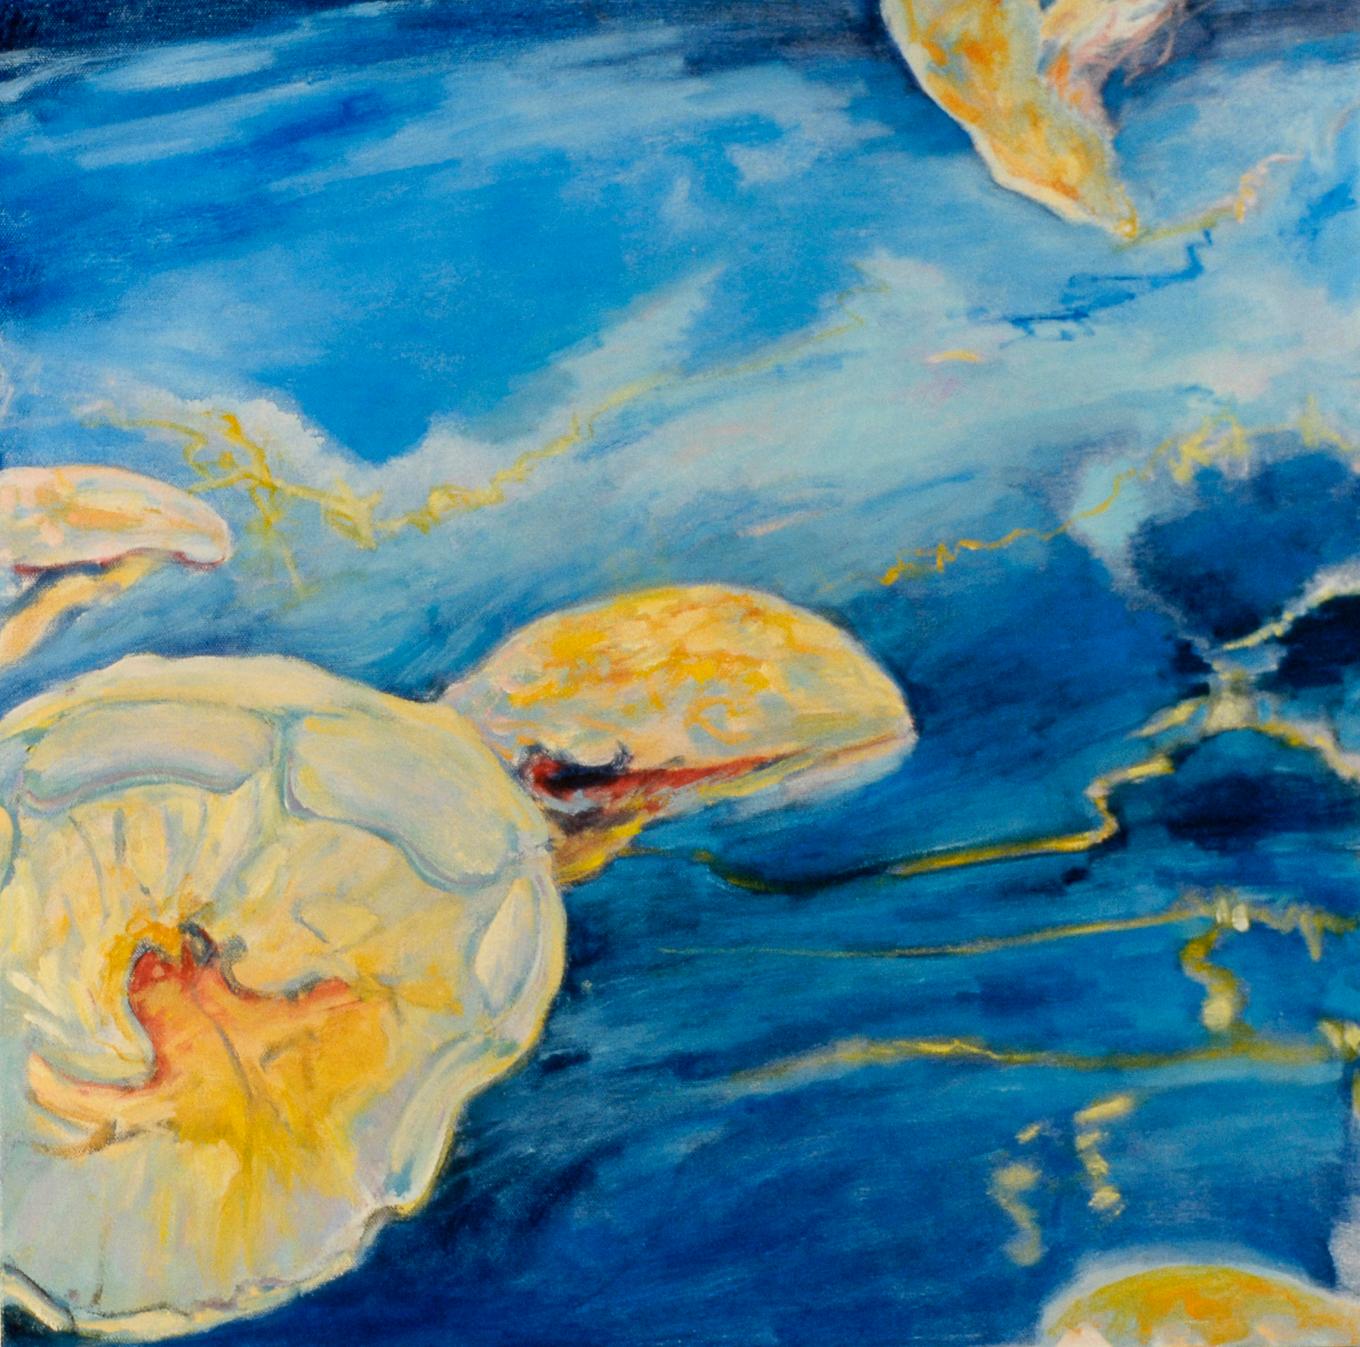 Sea Lantern, Oil/Canvas, Light & Shadow, Underwater Landscape, Light in the Deep - Painting by Ellen Hart